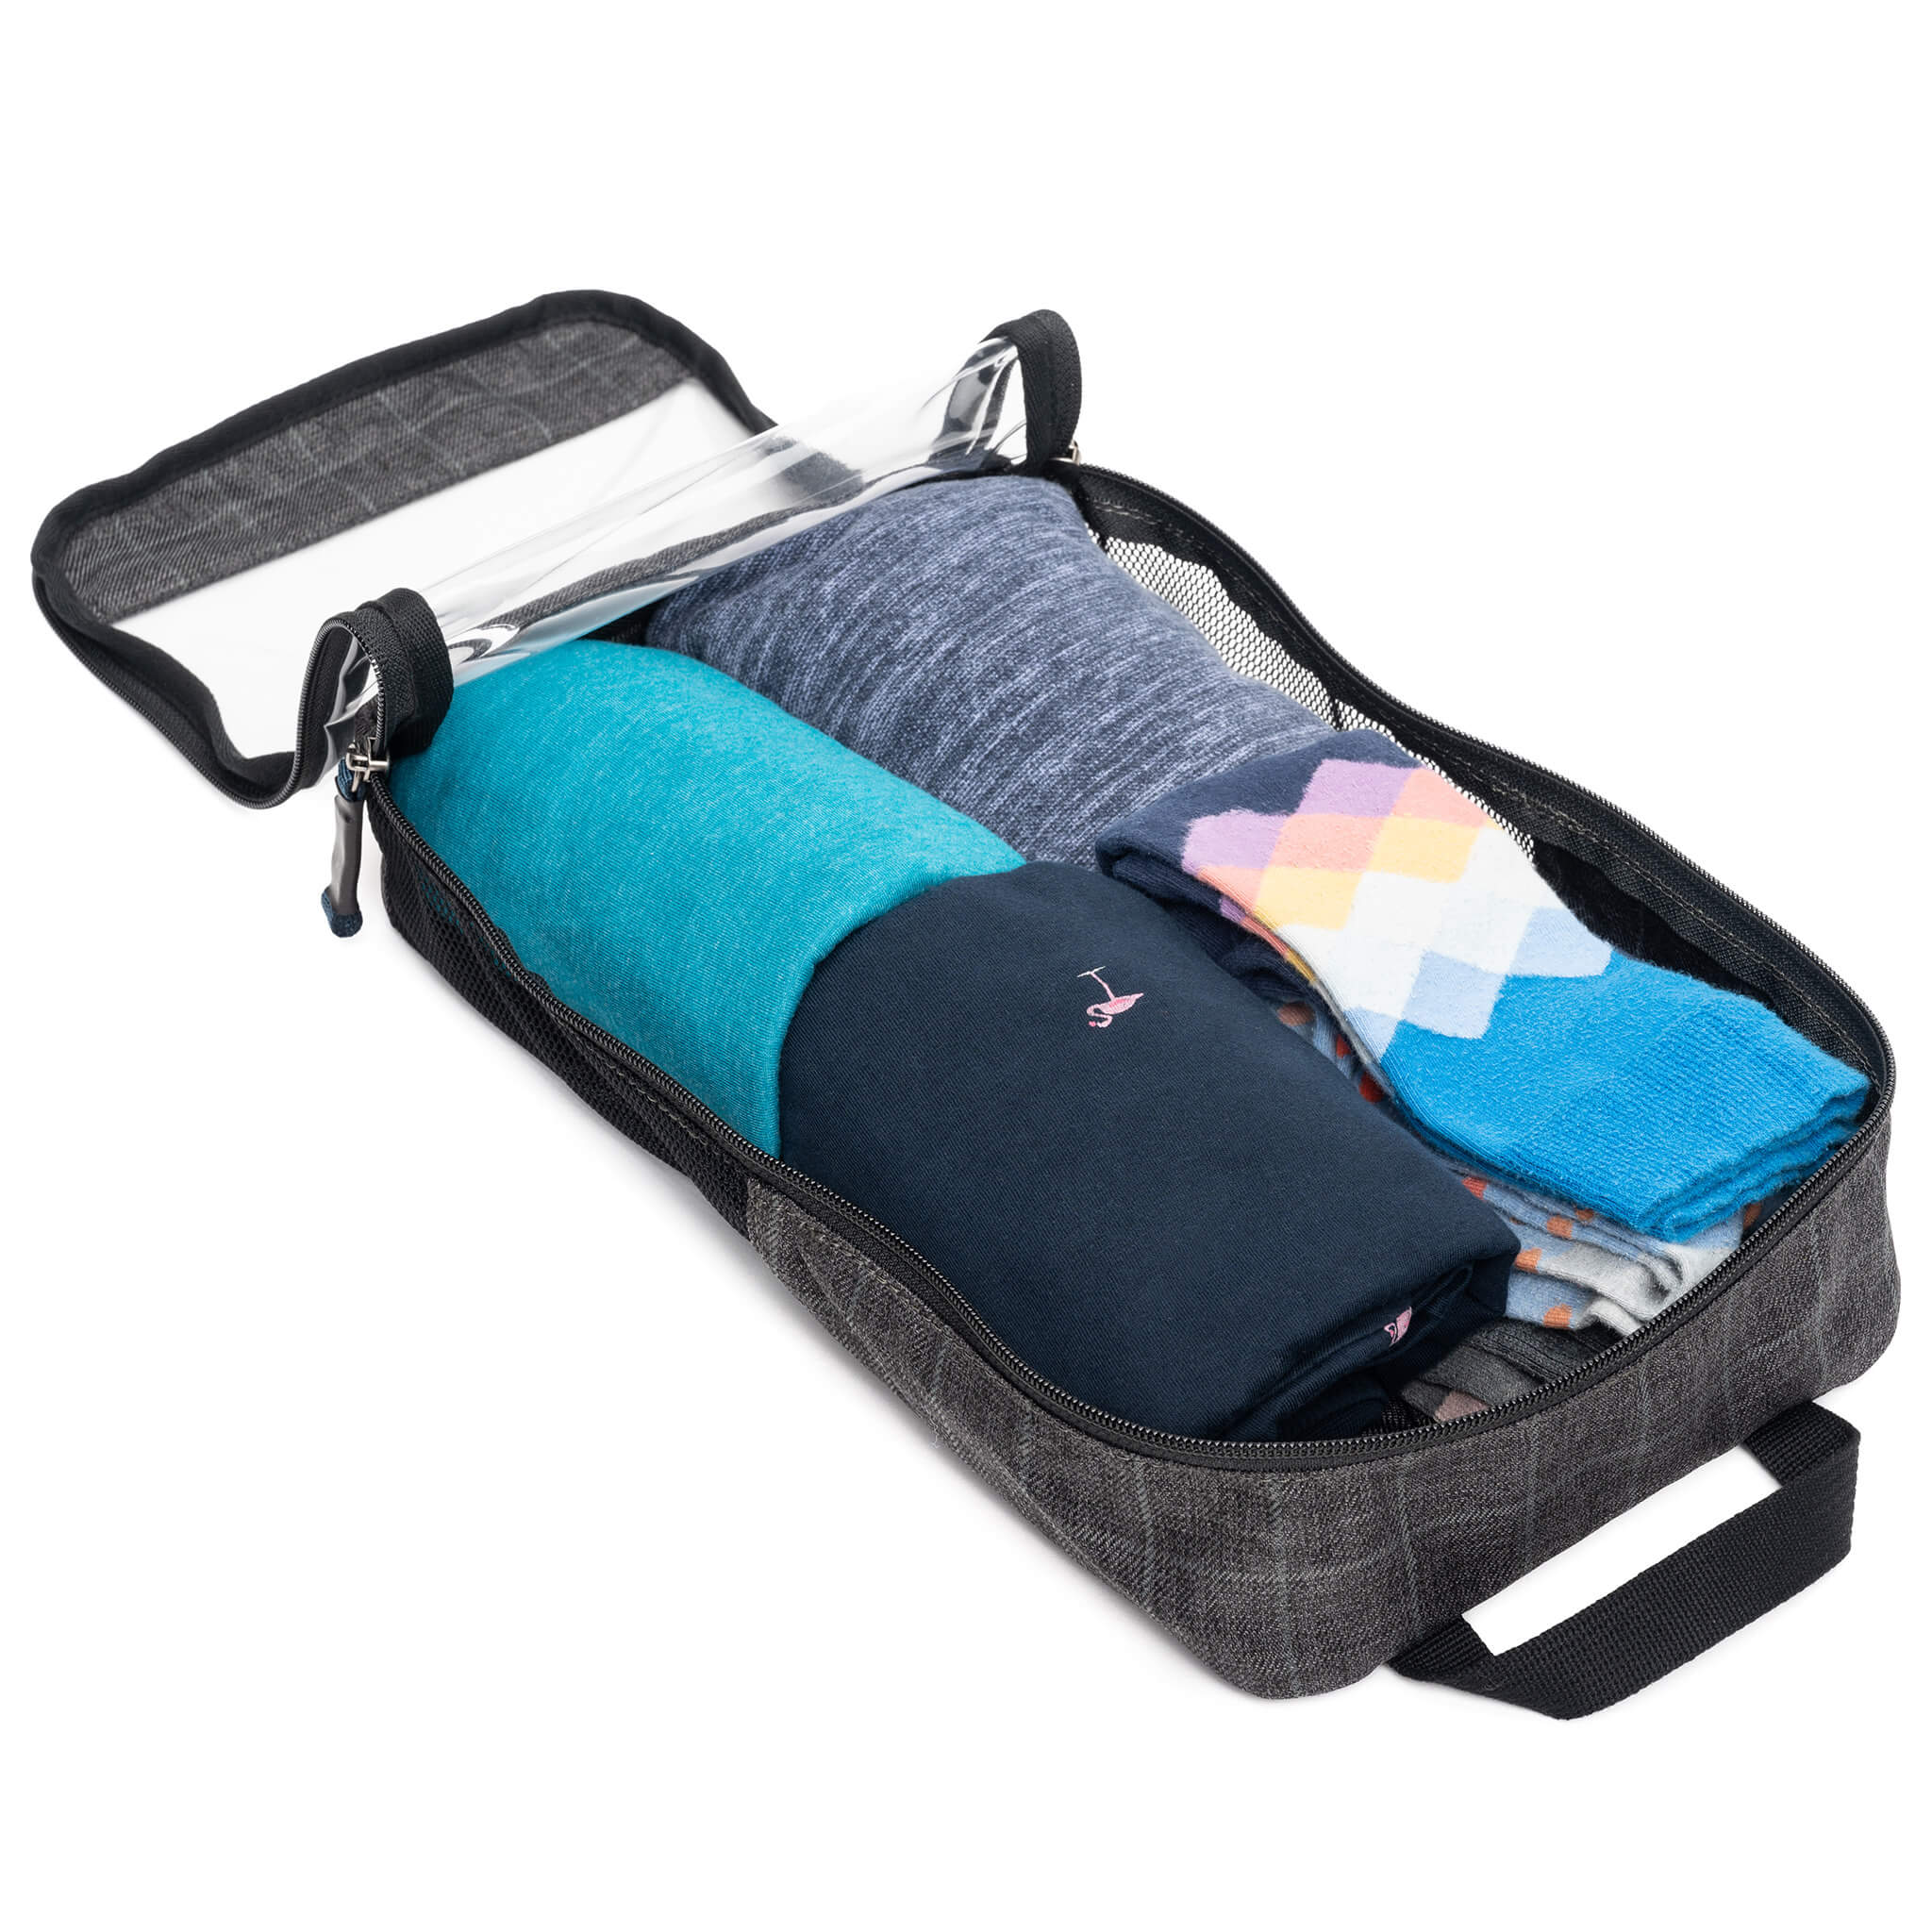 Clothing Cube - Medium for Travel Luggage Organization – Think